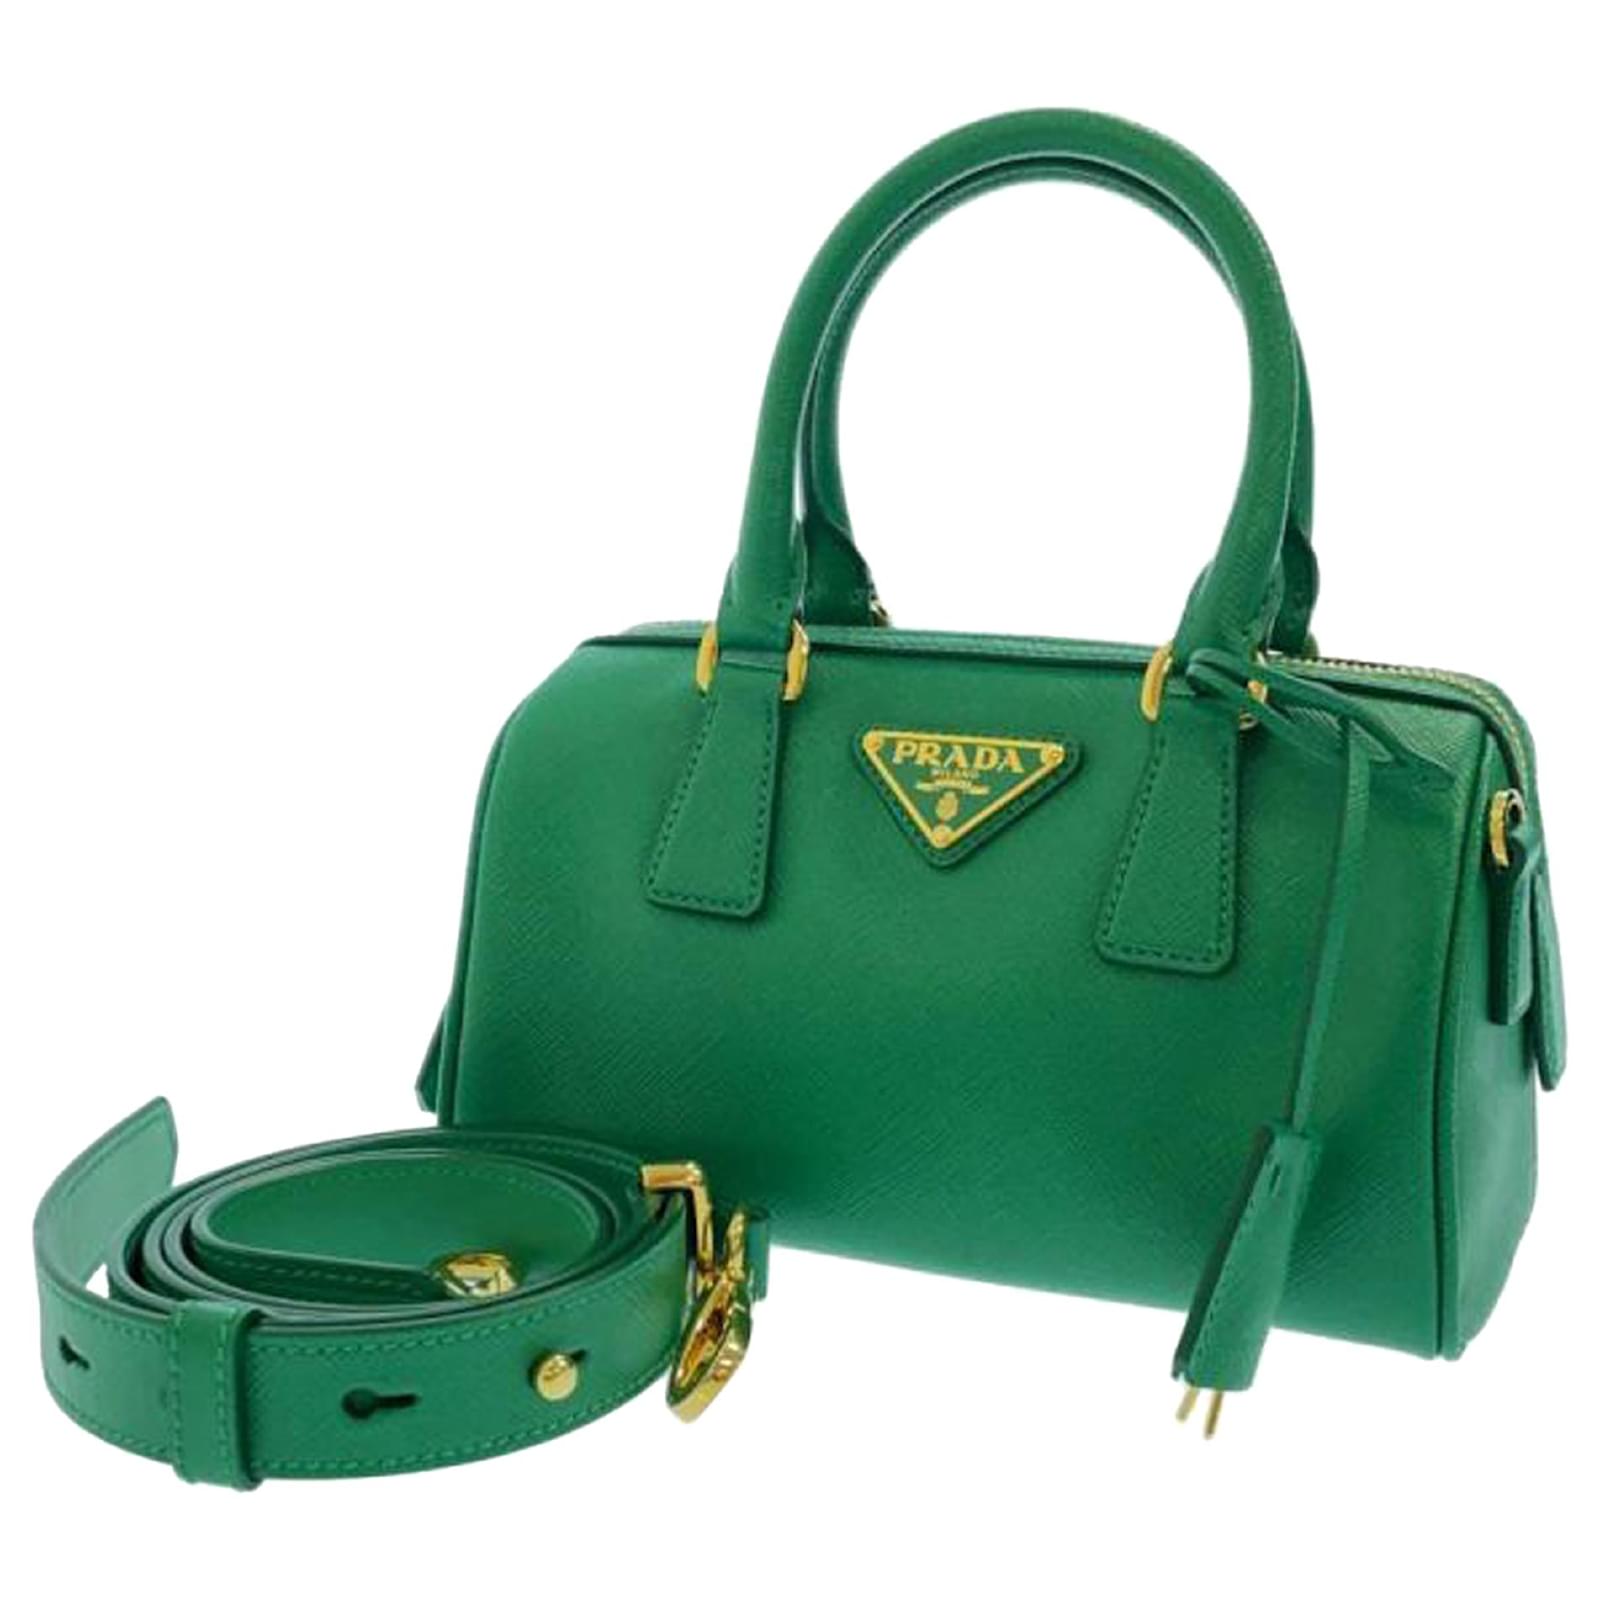 Prada Promenade Saffiano Leather Bag in Green